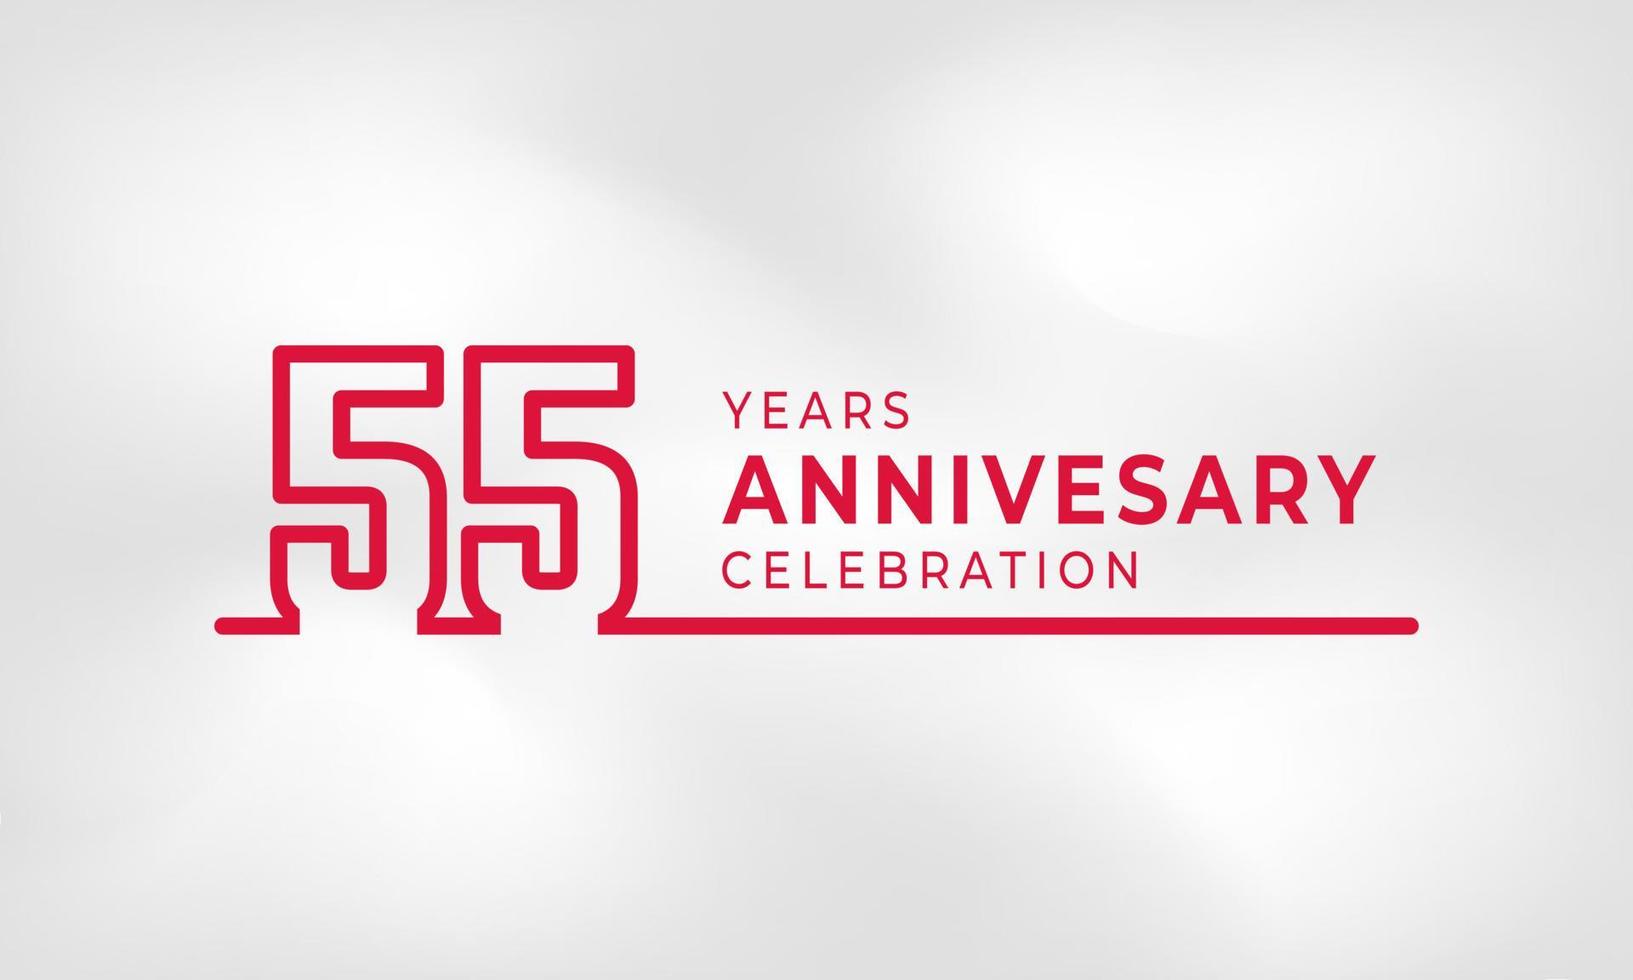 55-jährige Jubiläumsfeier verknüpfte Logo-Umrissnummer rote Farbe für Feierveranstaltung, Hochzeit, Grußkarte und Einladung isoliert auf weißem Texturhintergrund vektor